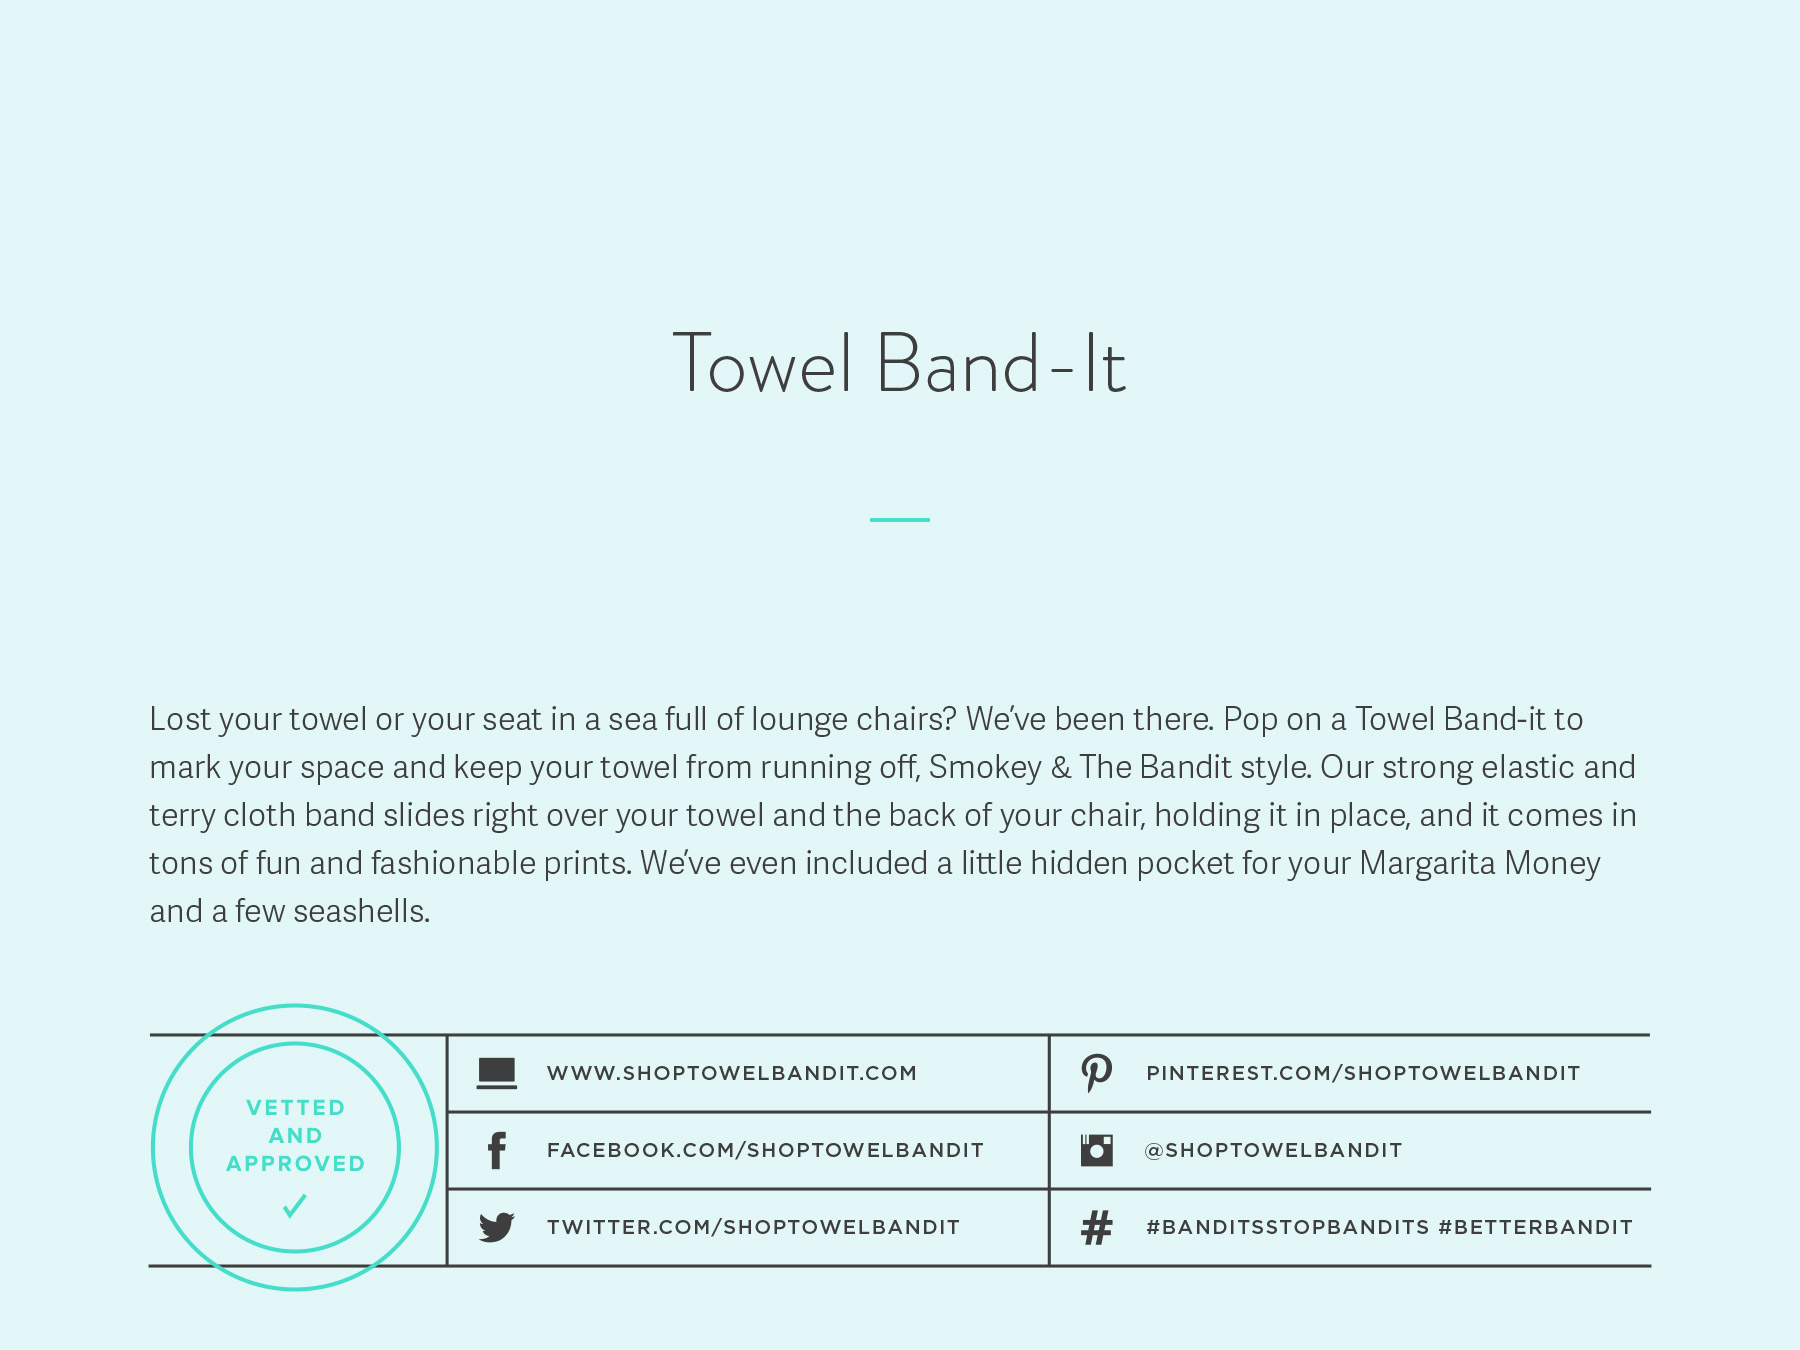 Towel Band-It company naming process